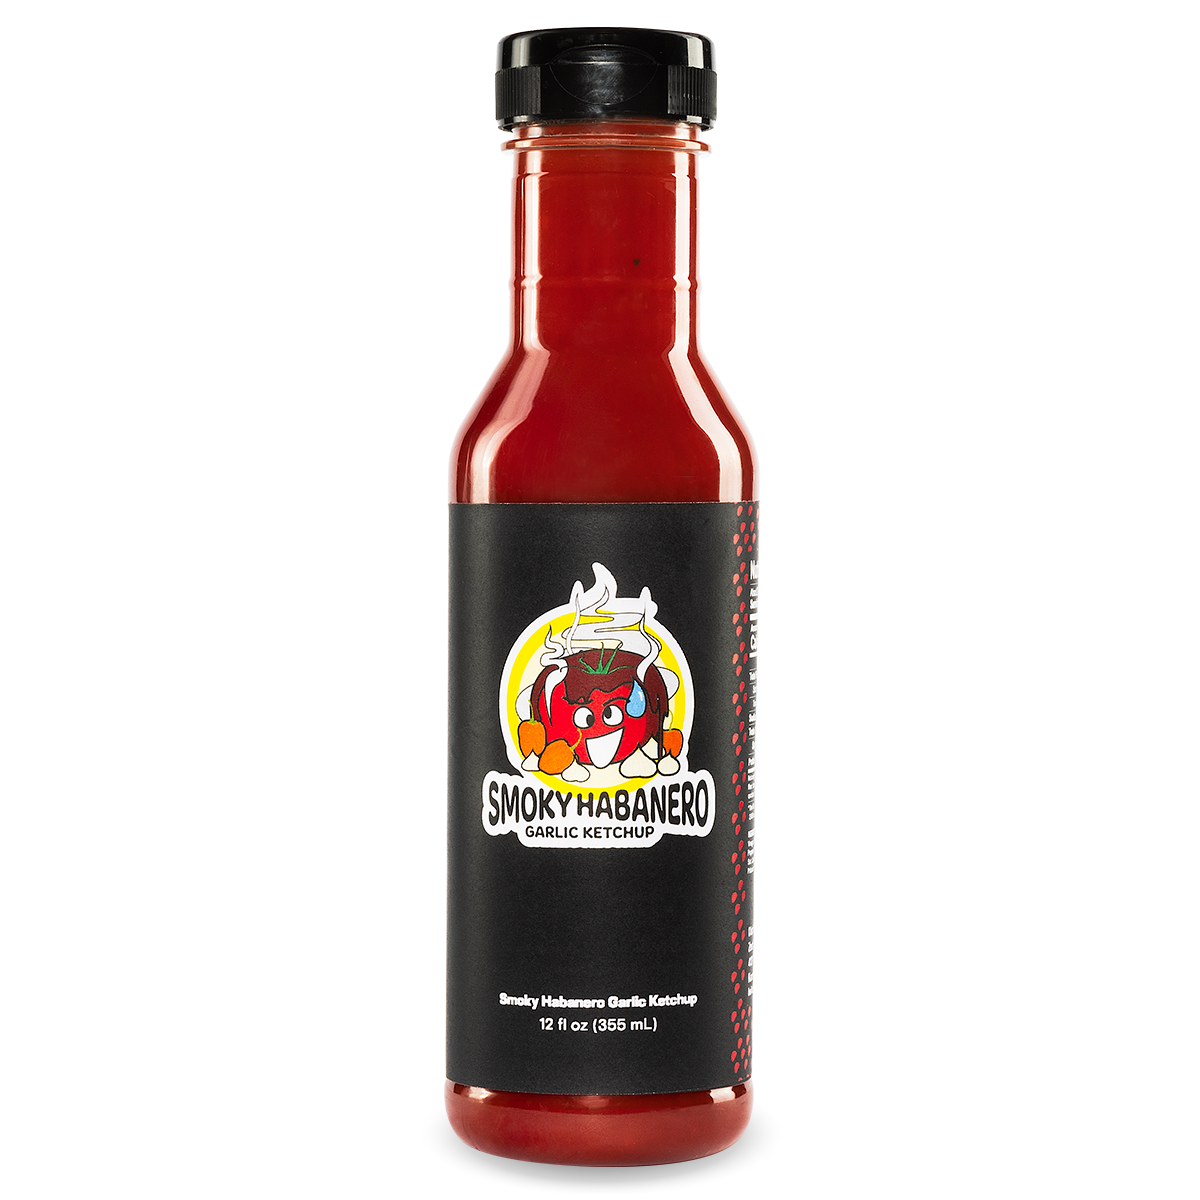 Smoky Habanero Garlic Ketchup